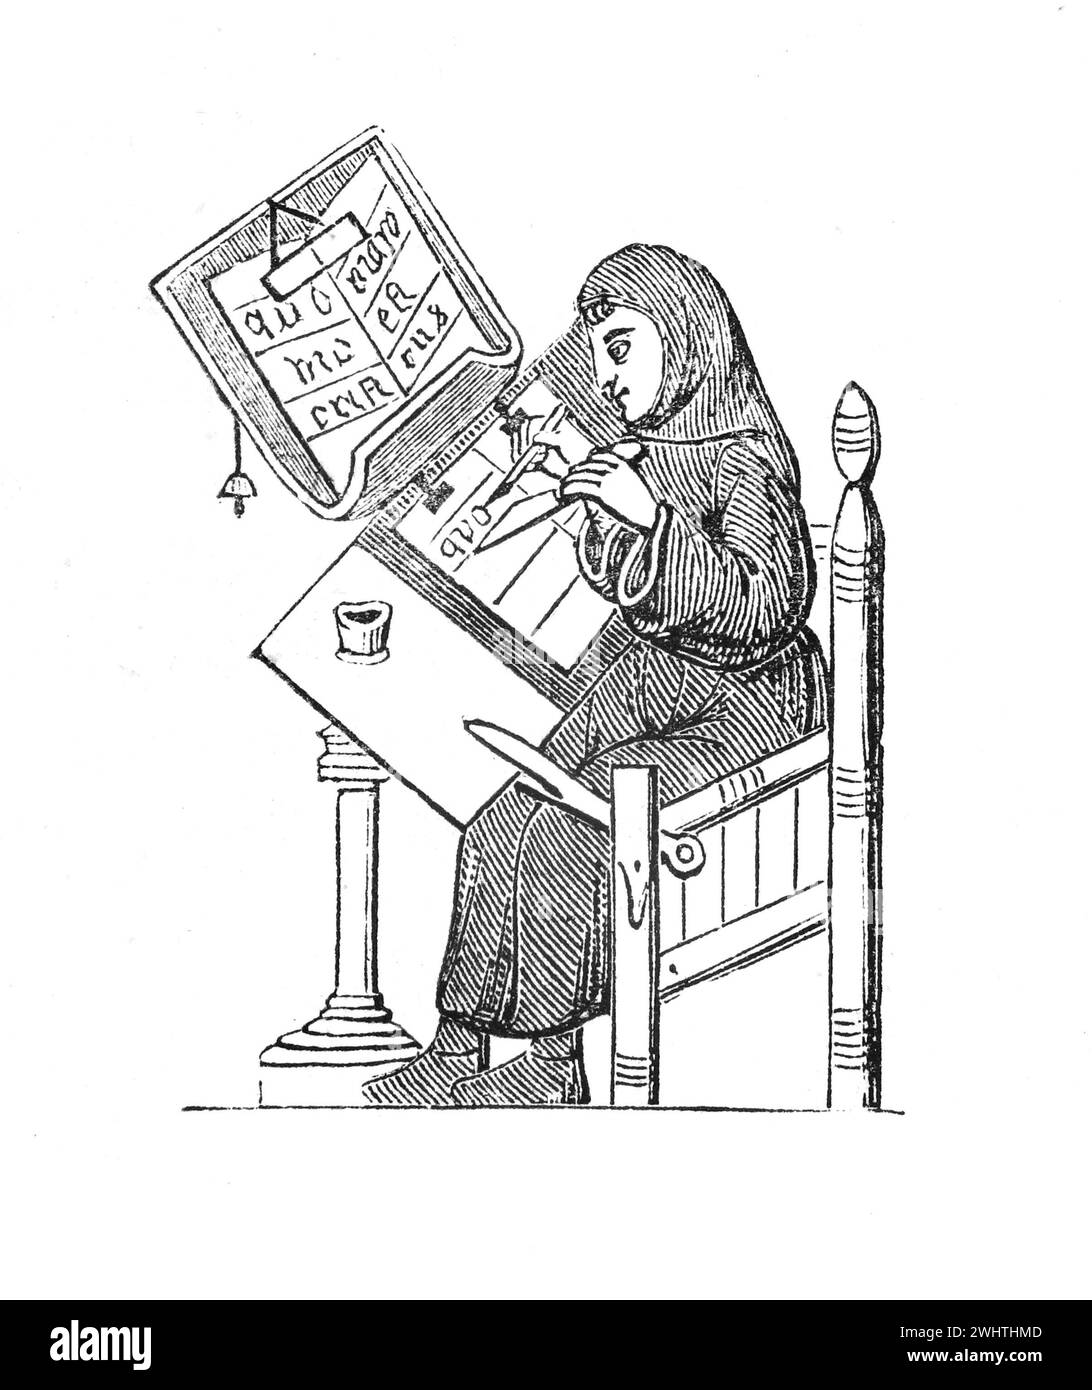 Transcriptor medieval en el trabajo. siglo xv. Ilustración en blanco y negro de la "vieja Inglaterra" publicada por James Sangster en 1860. Foto de stock